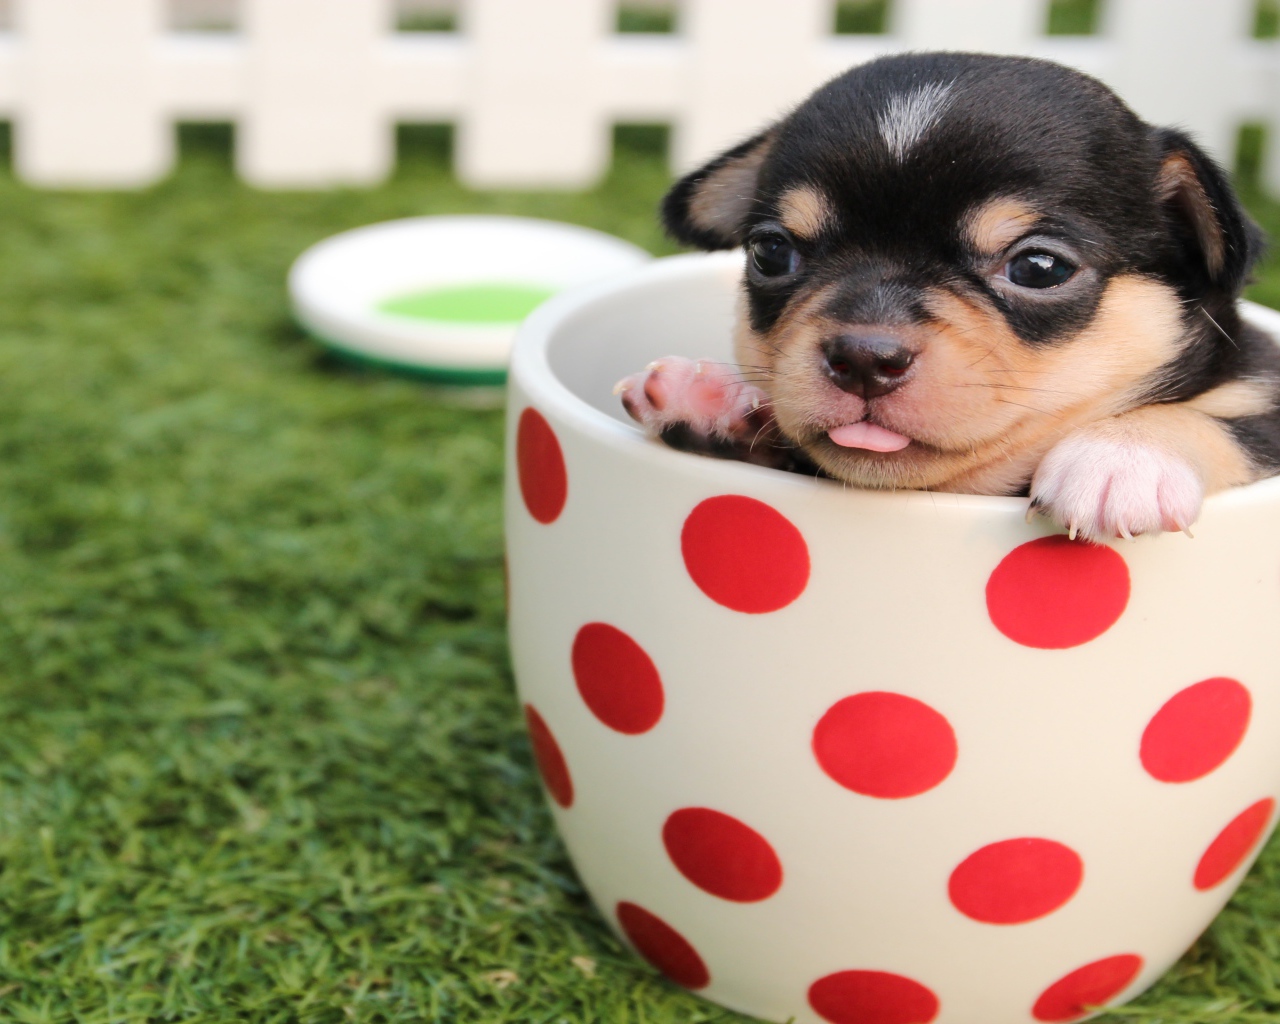 Маленький забавный щенок сидит в чашке